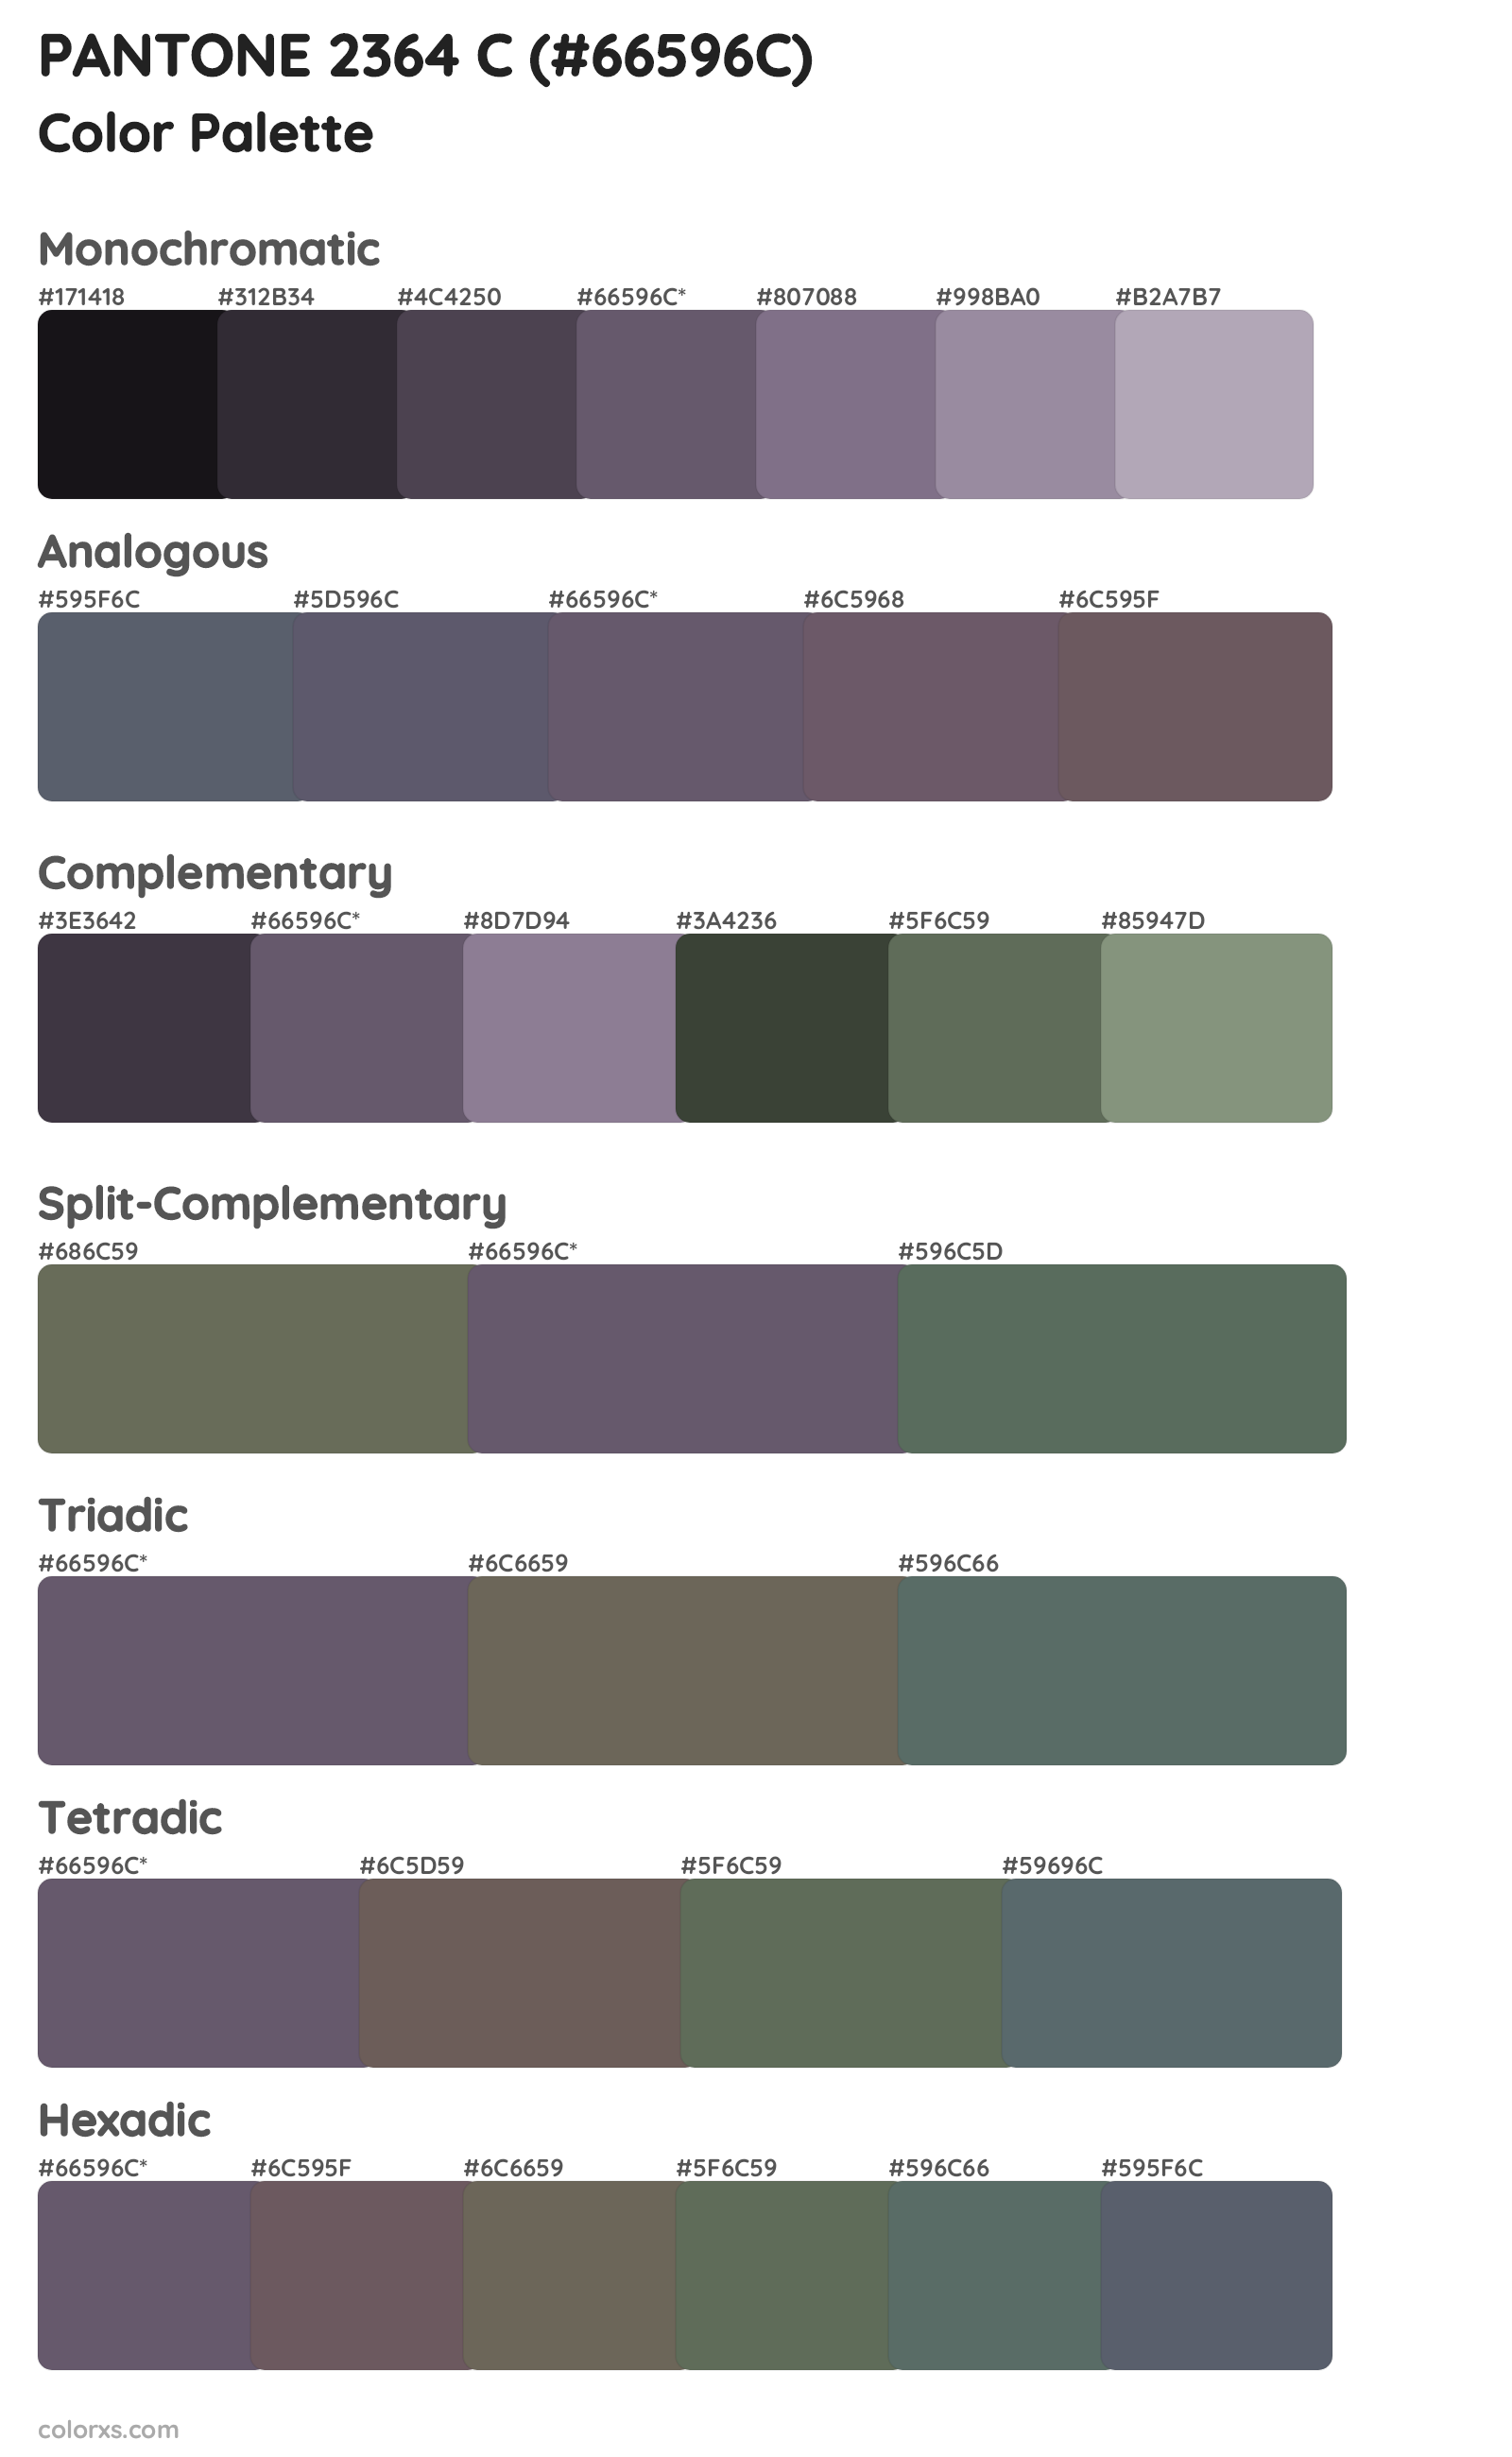 PANTONE 2364 C Color Scheme Palettes